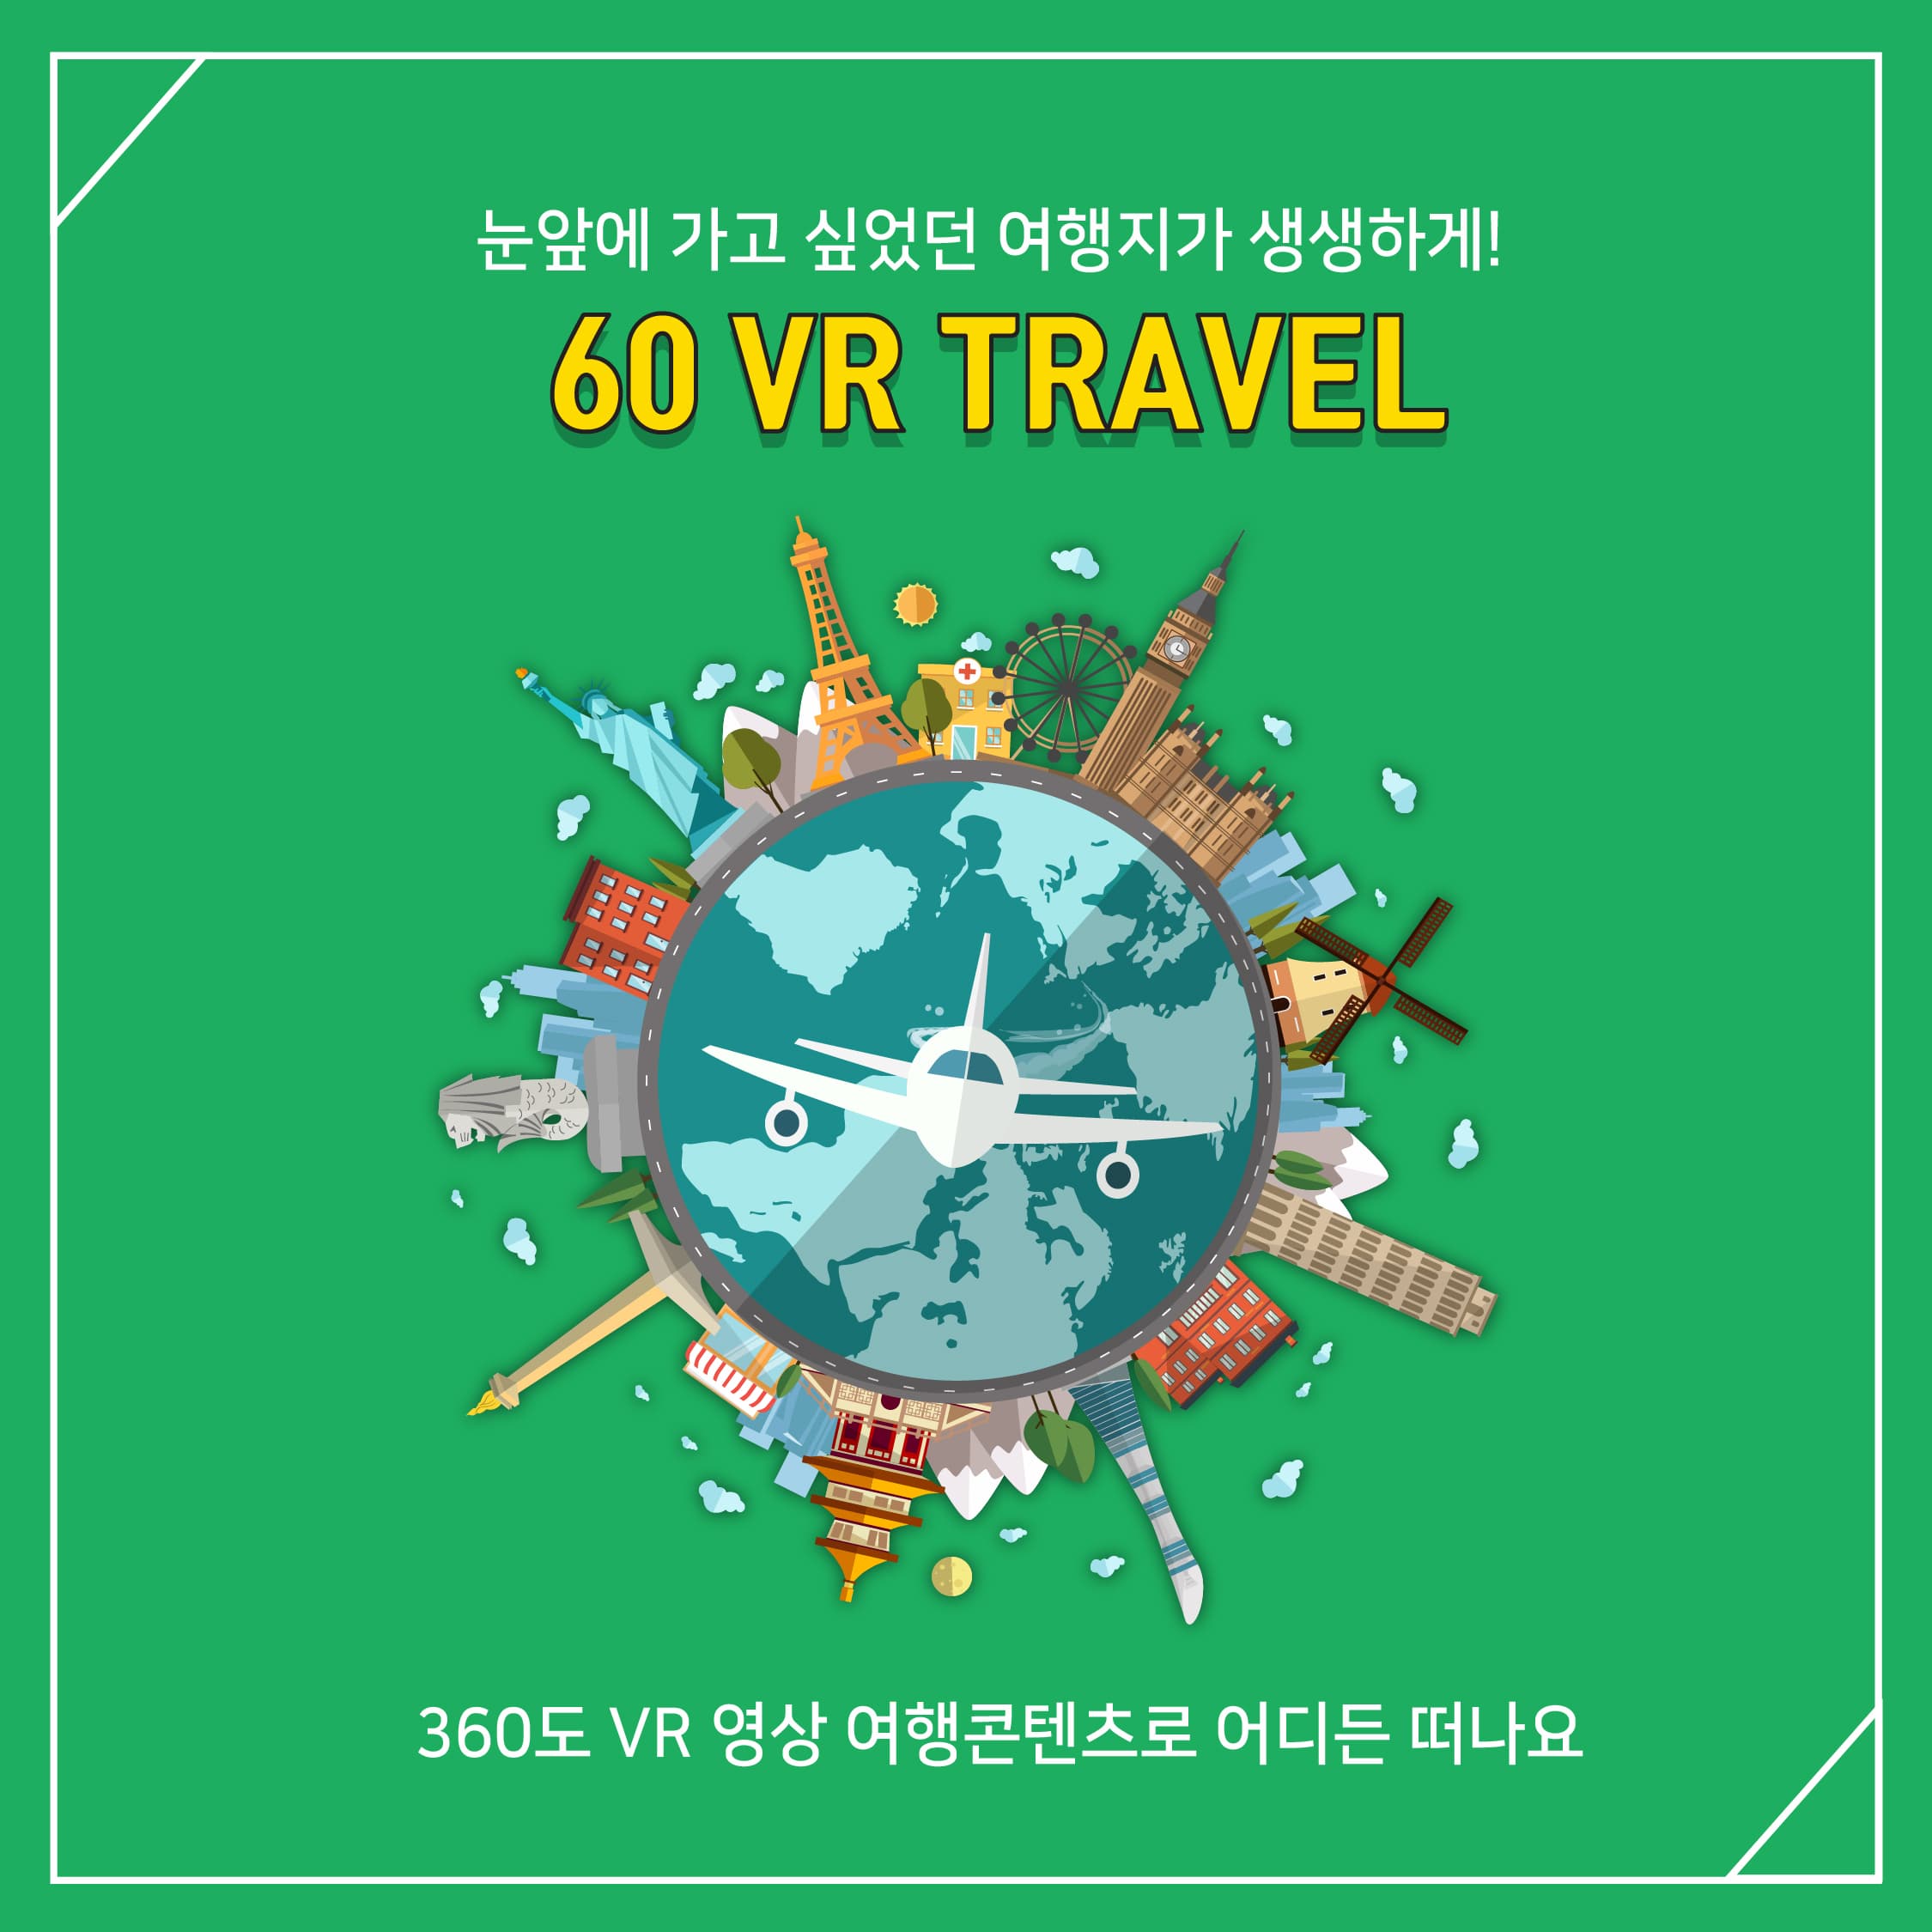 눈앞에 가고 싶었던 여행지가 생생하게
60 VR TRAVEL
360도 VR 영상 여행 콘텐츠로 어디든 떠나요